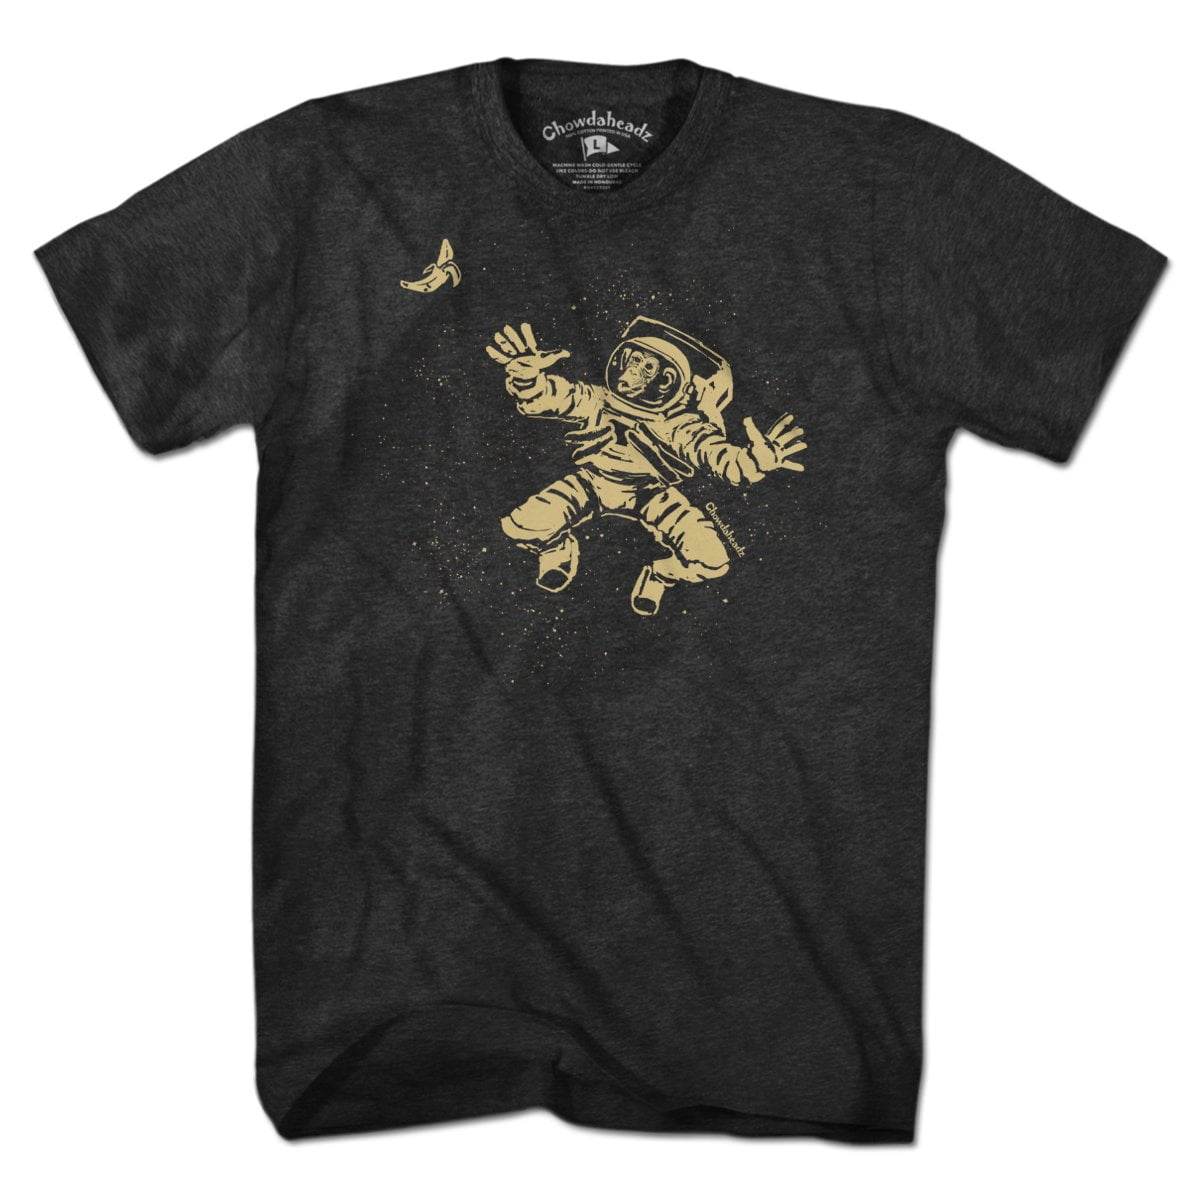 Space Monkey T-Shirt – Chowdaheadz